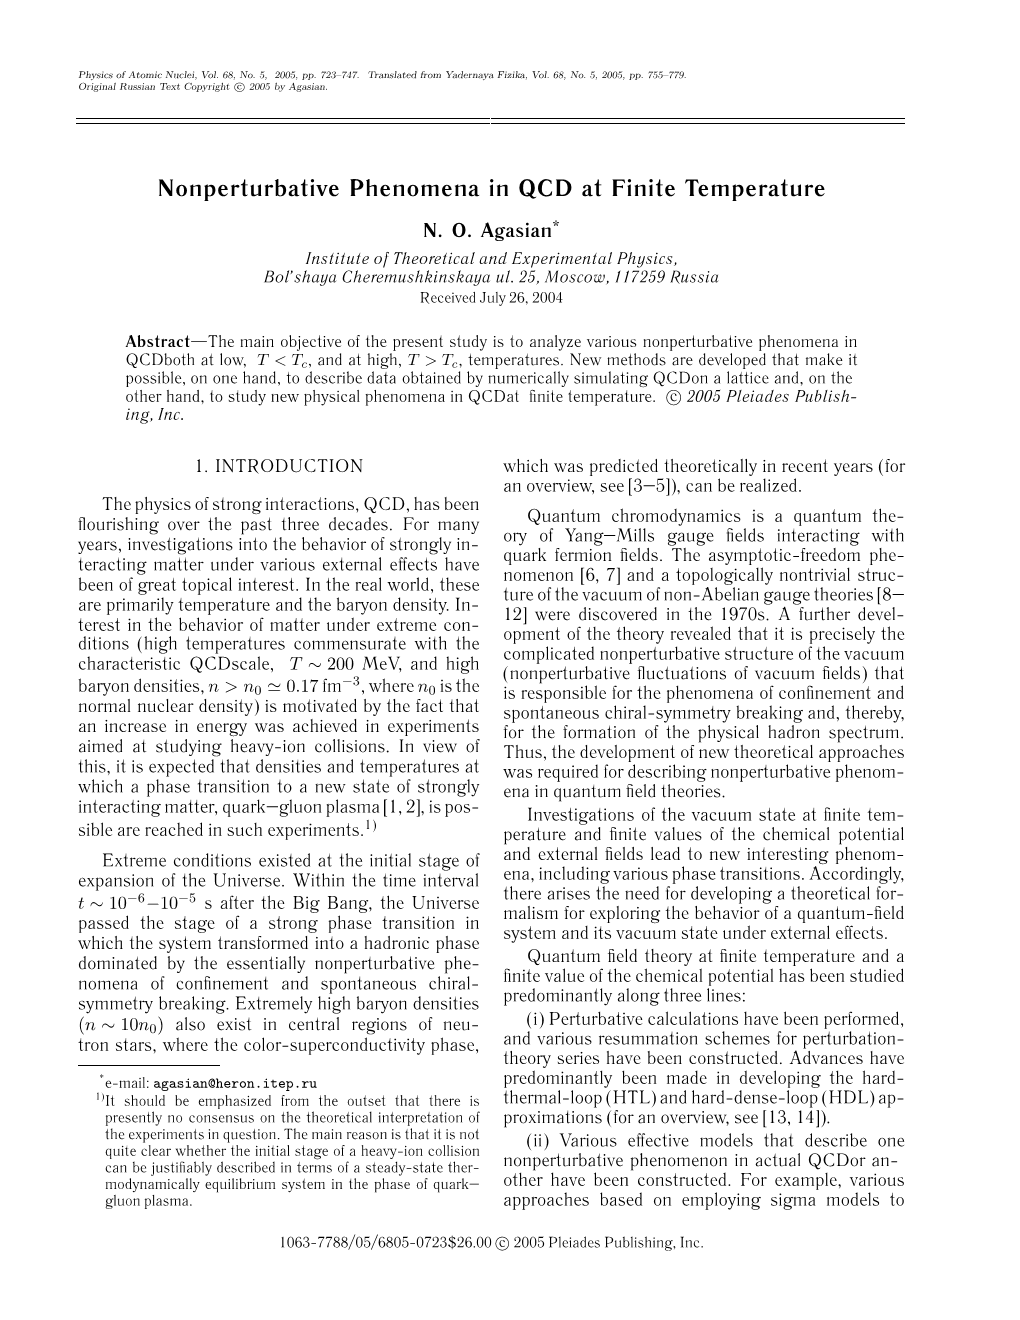 Nonperturbative Phenomena in QCD at Finite Temperature